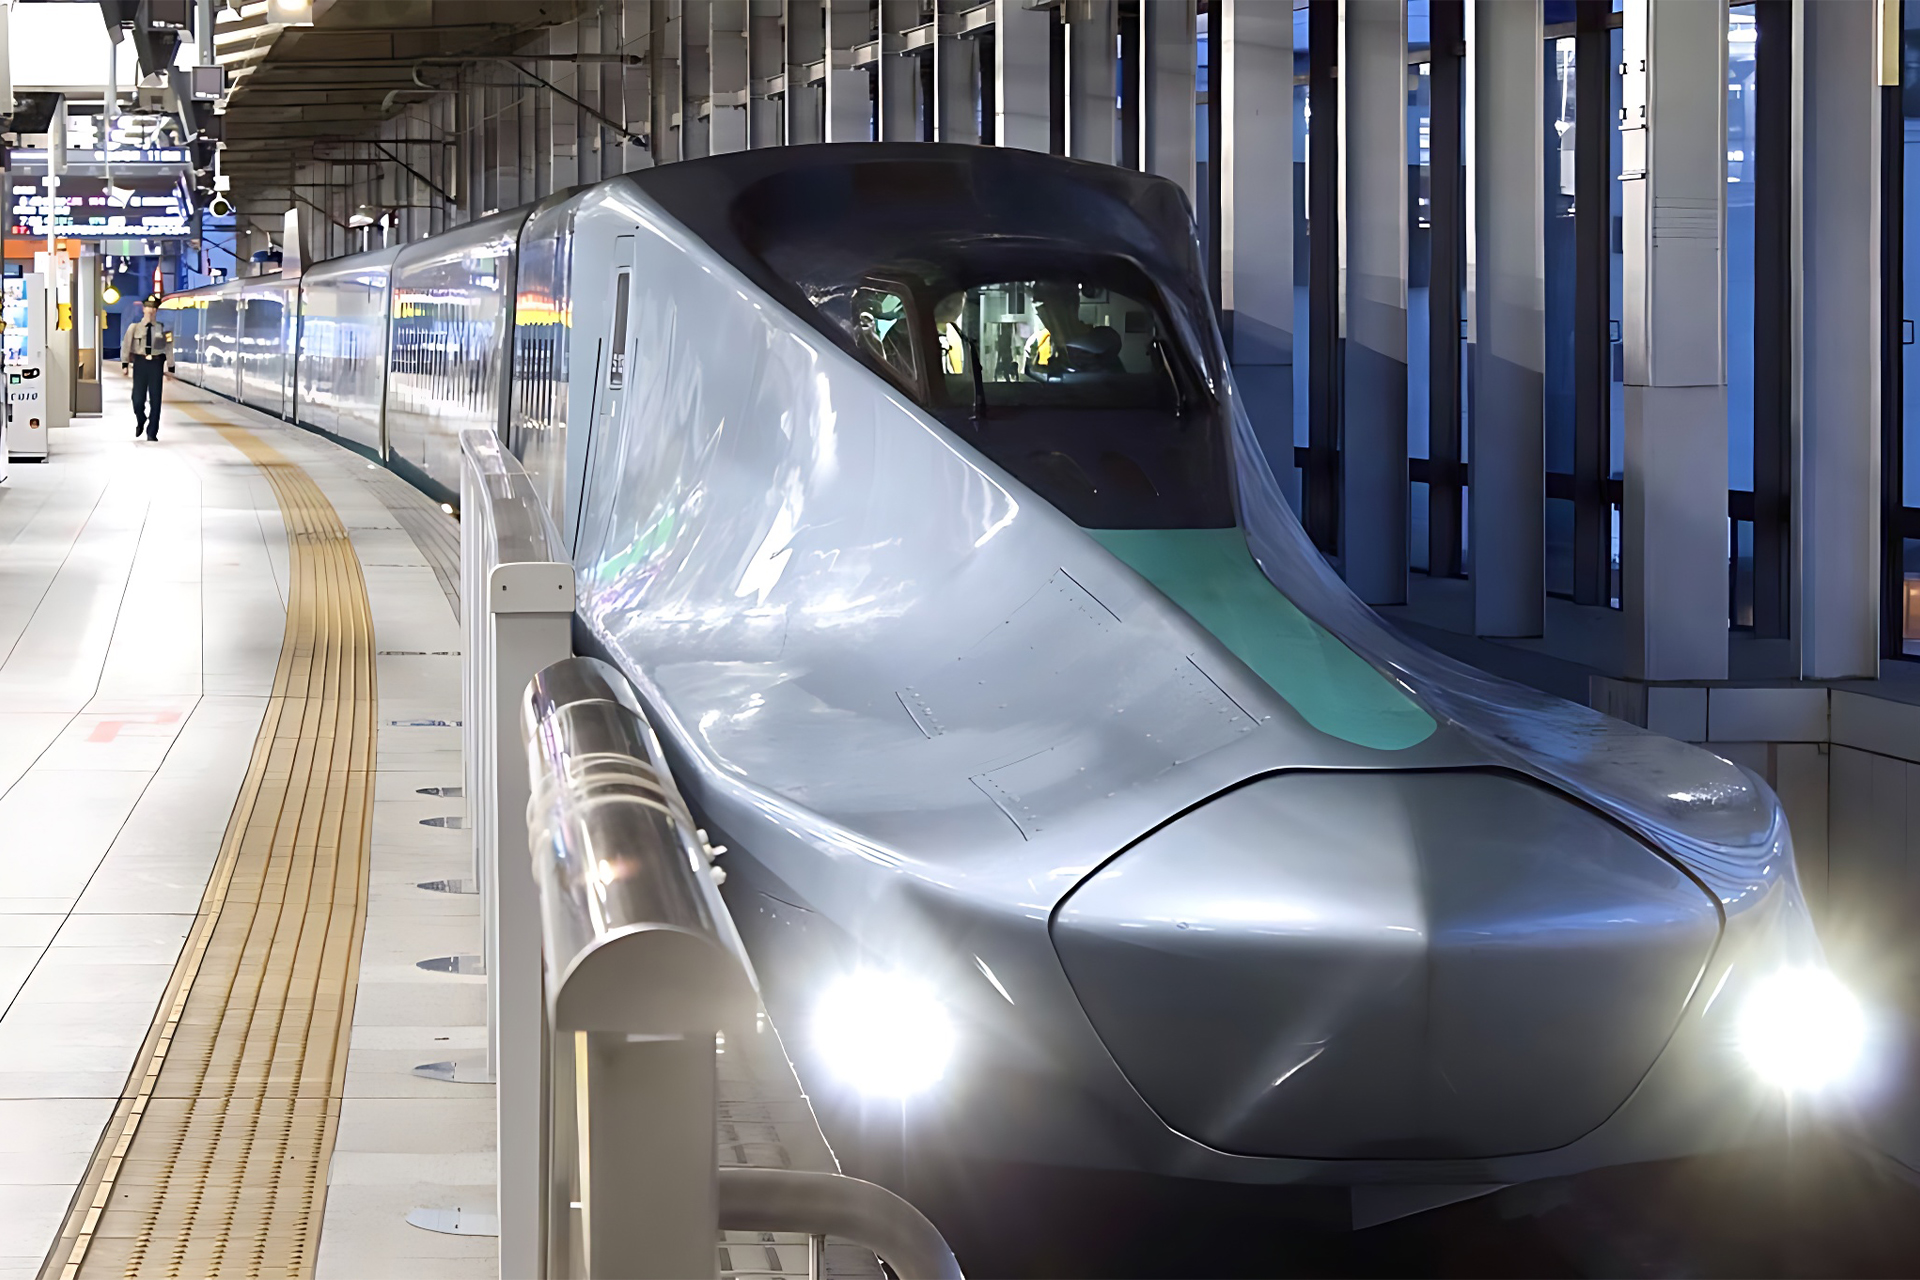 Imagine viajar a incríveis 400 km h, Trem-bala de alta velocidade está sendo testado no Japão